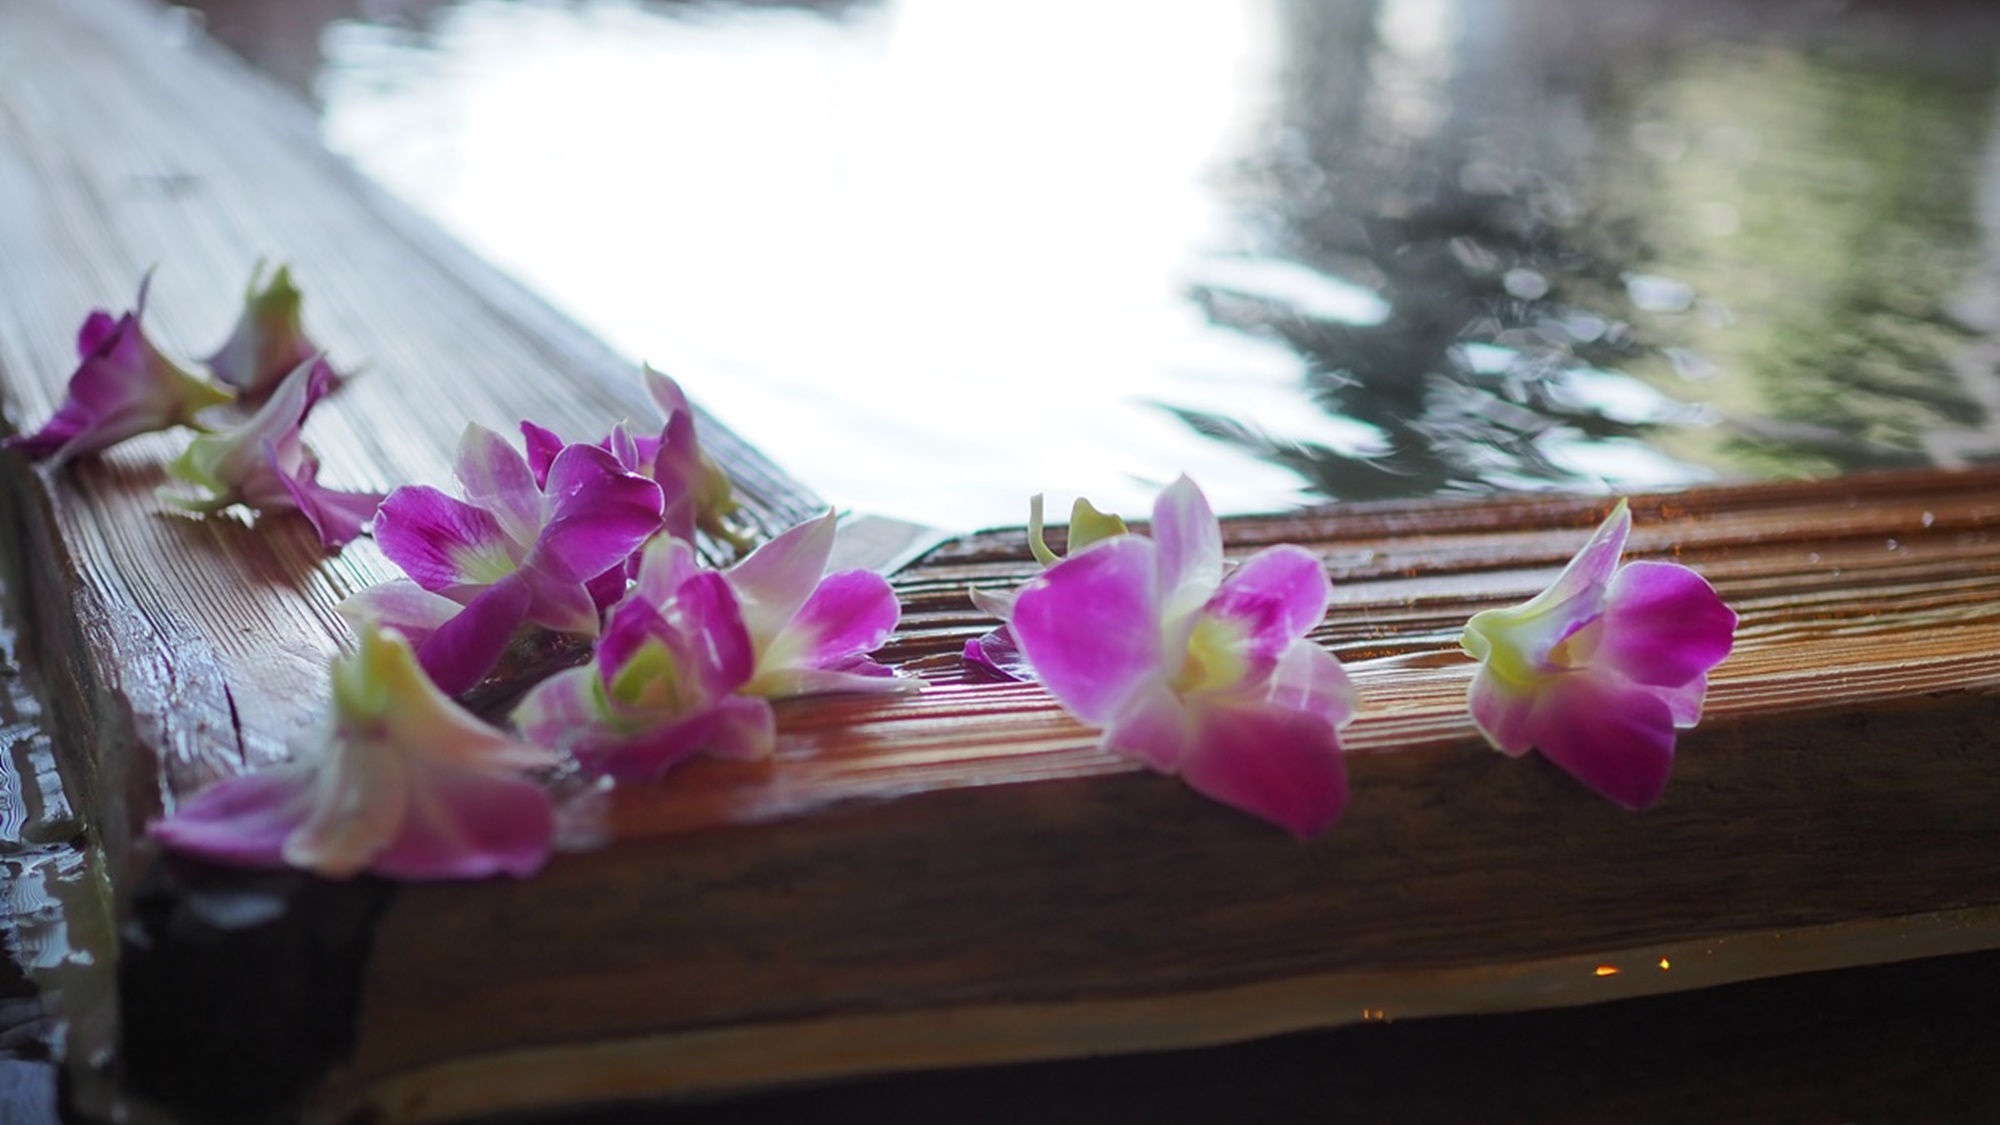 露天風呂「風の湯」では、午後になると美しい花びらが湯の上で揺れ、それは華やかな夢の船。